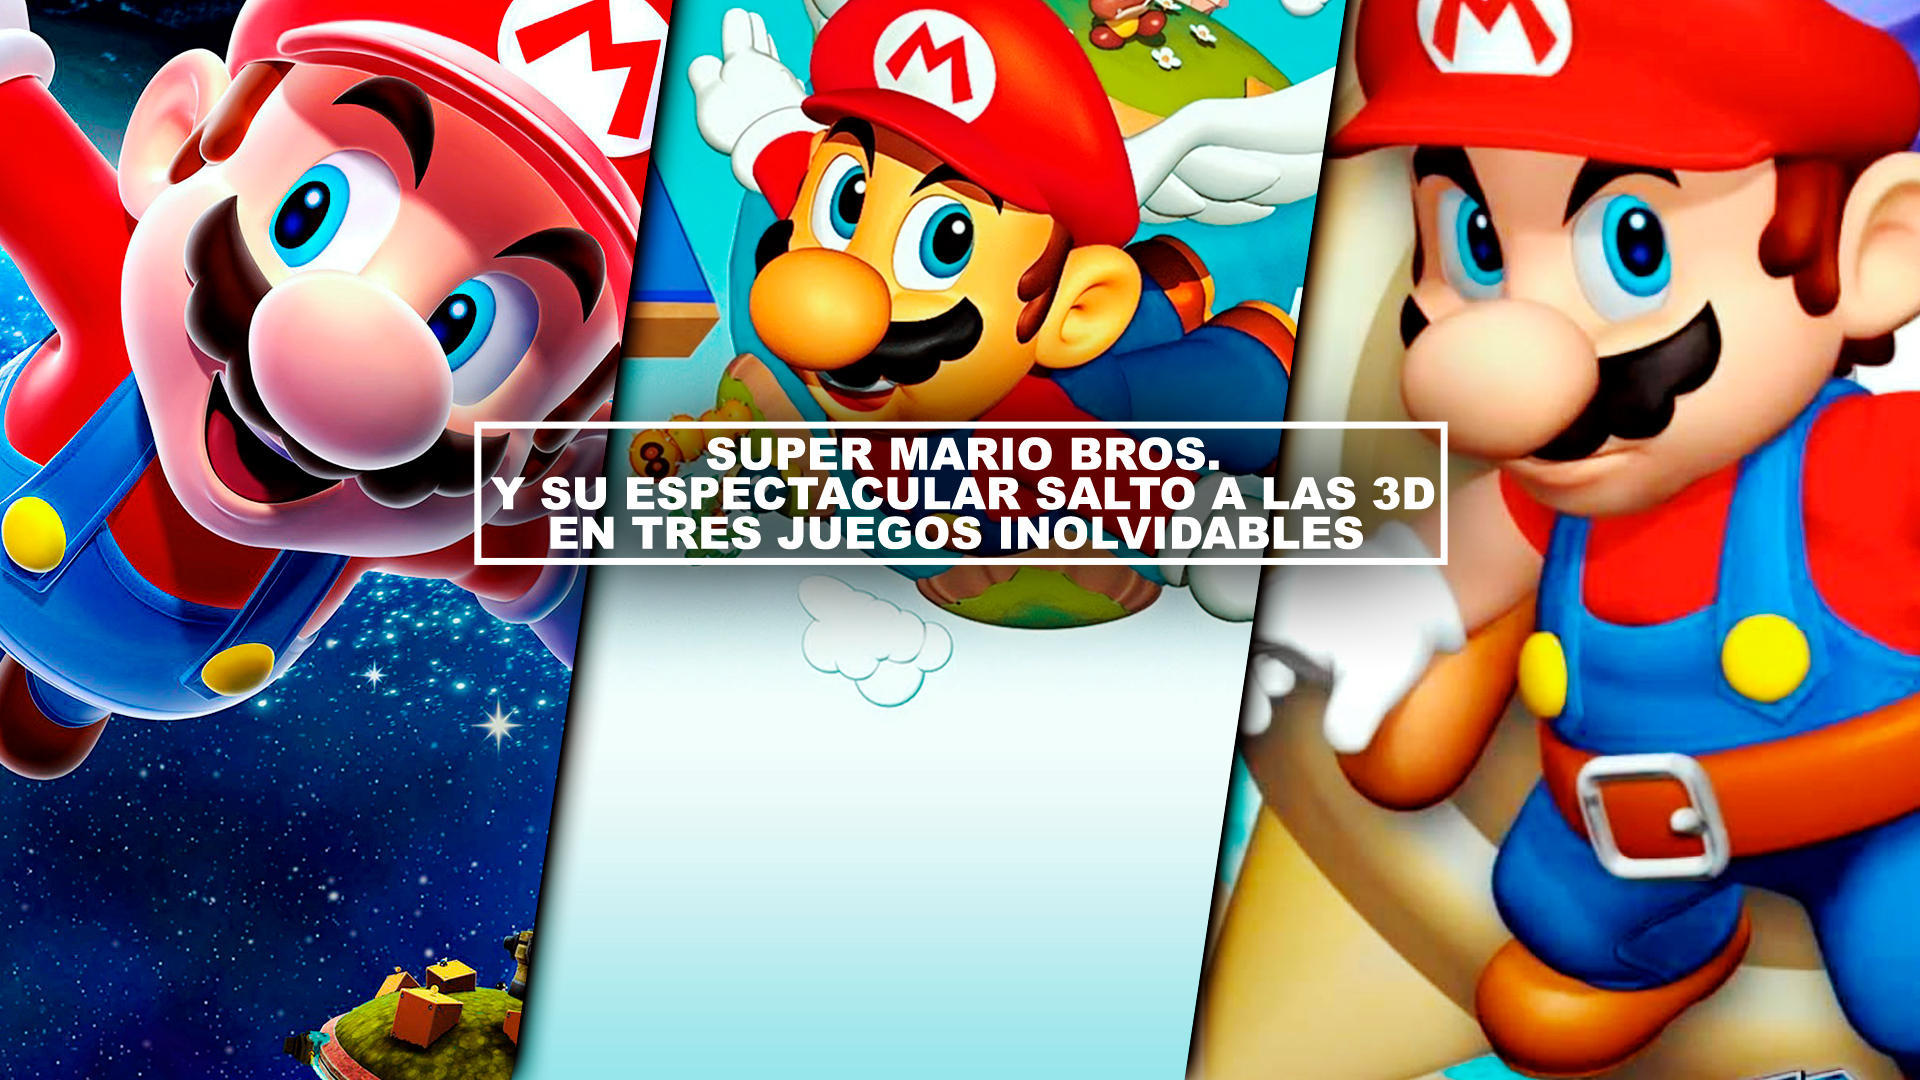 Super Mario Bros. y su espectacular salto a las 3D en tres juegos inolvidables